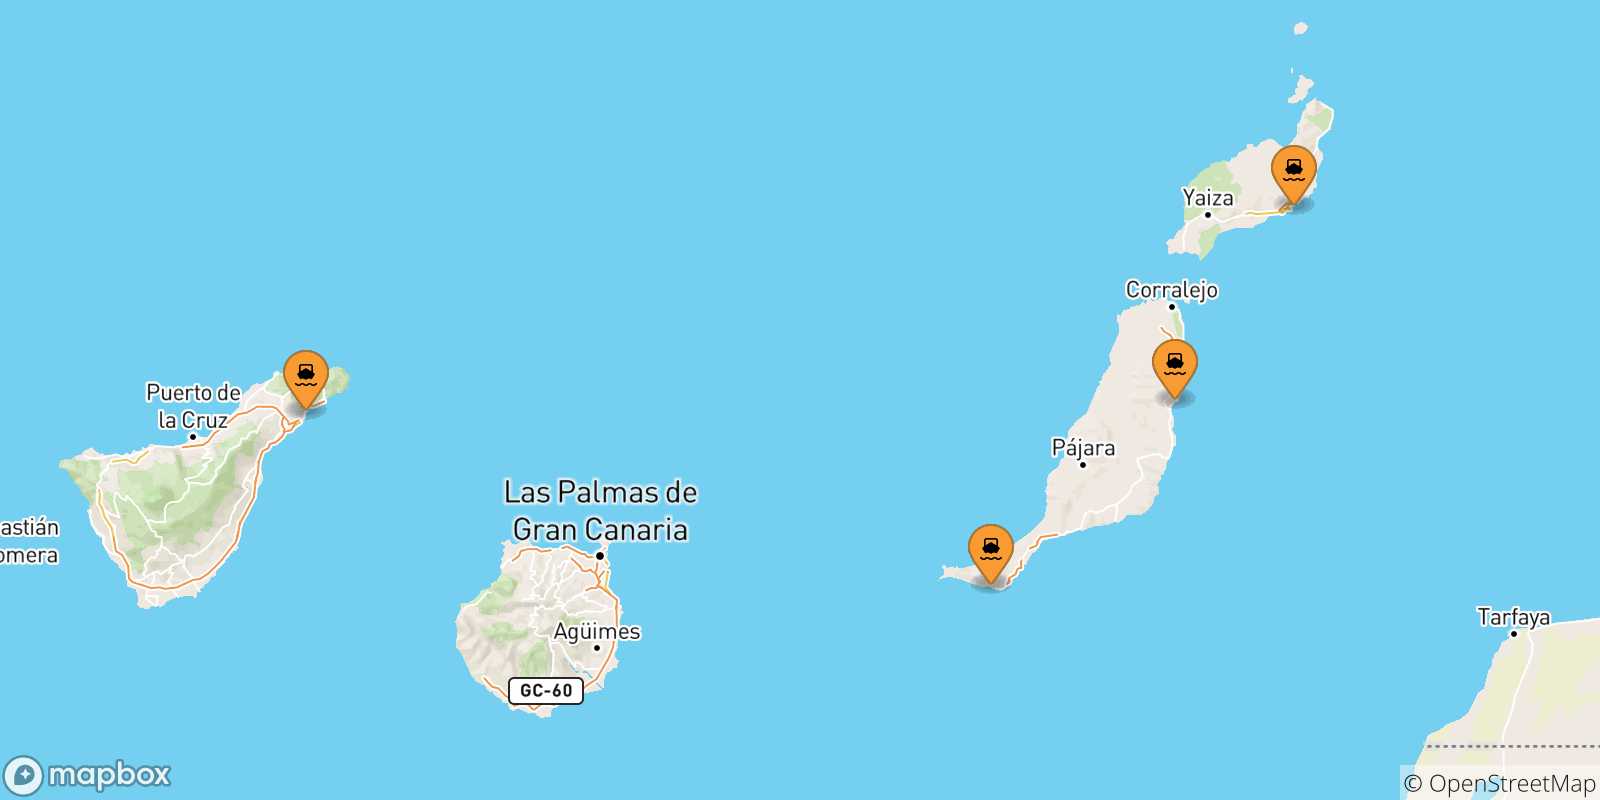 Mappa delle possibili rotte tra le Isole Canarie e Las Palmas De Gran Canaria